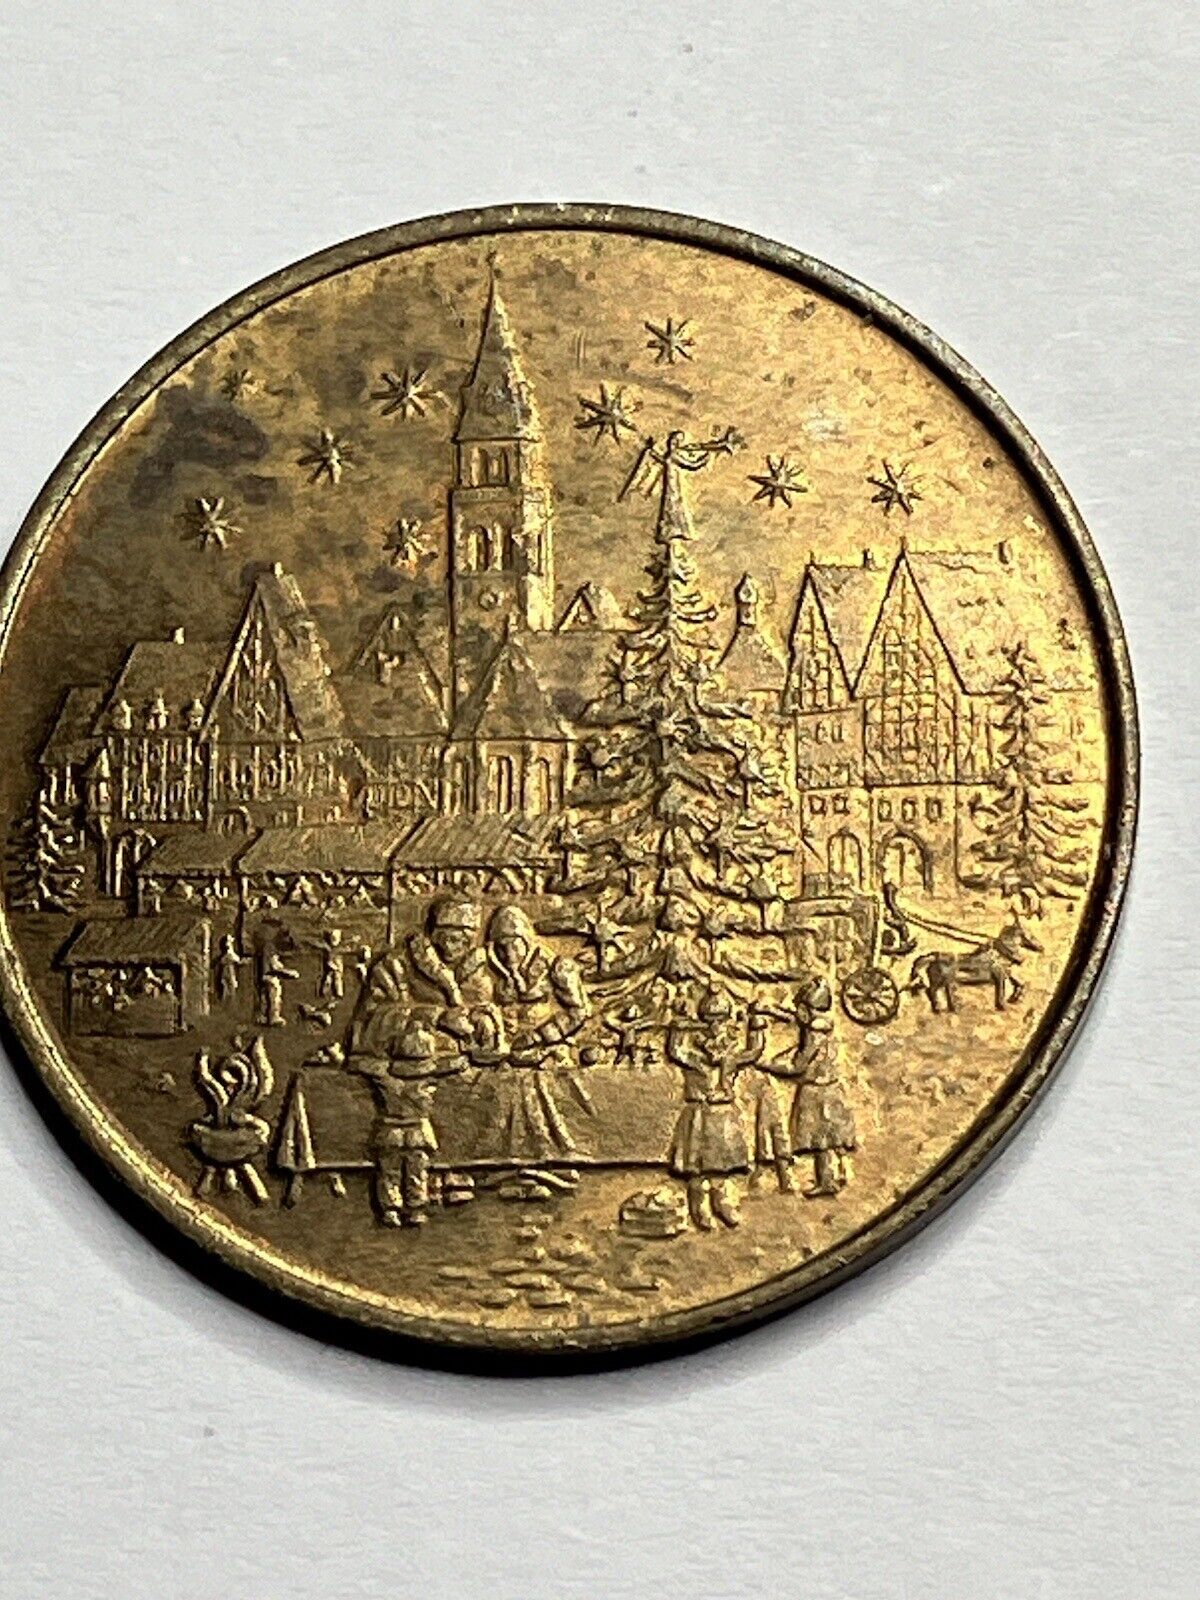 Rare Weihnachten Token 1979 Vintage German Christmas Market New Years Coin #sg2